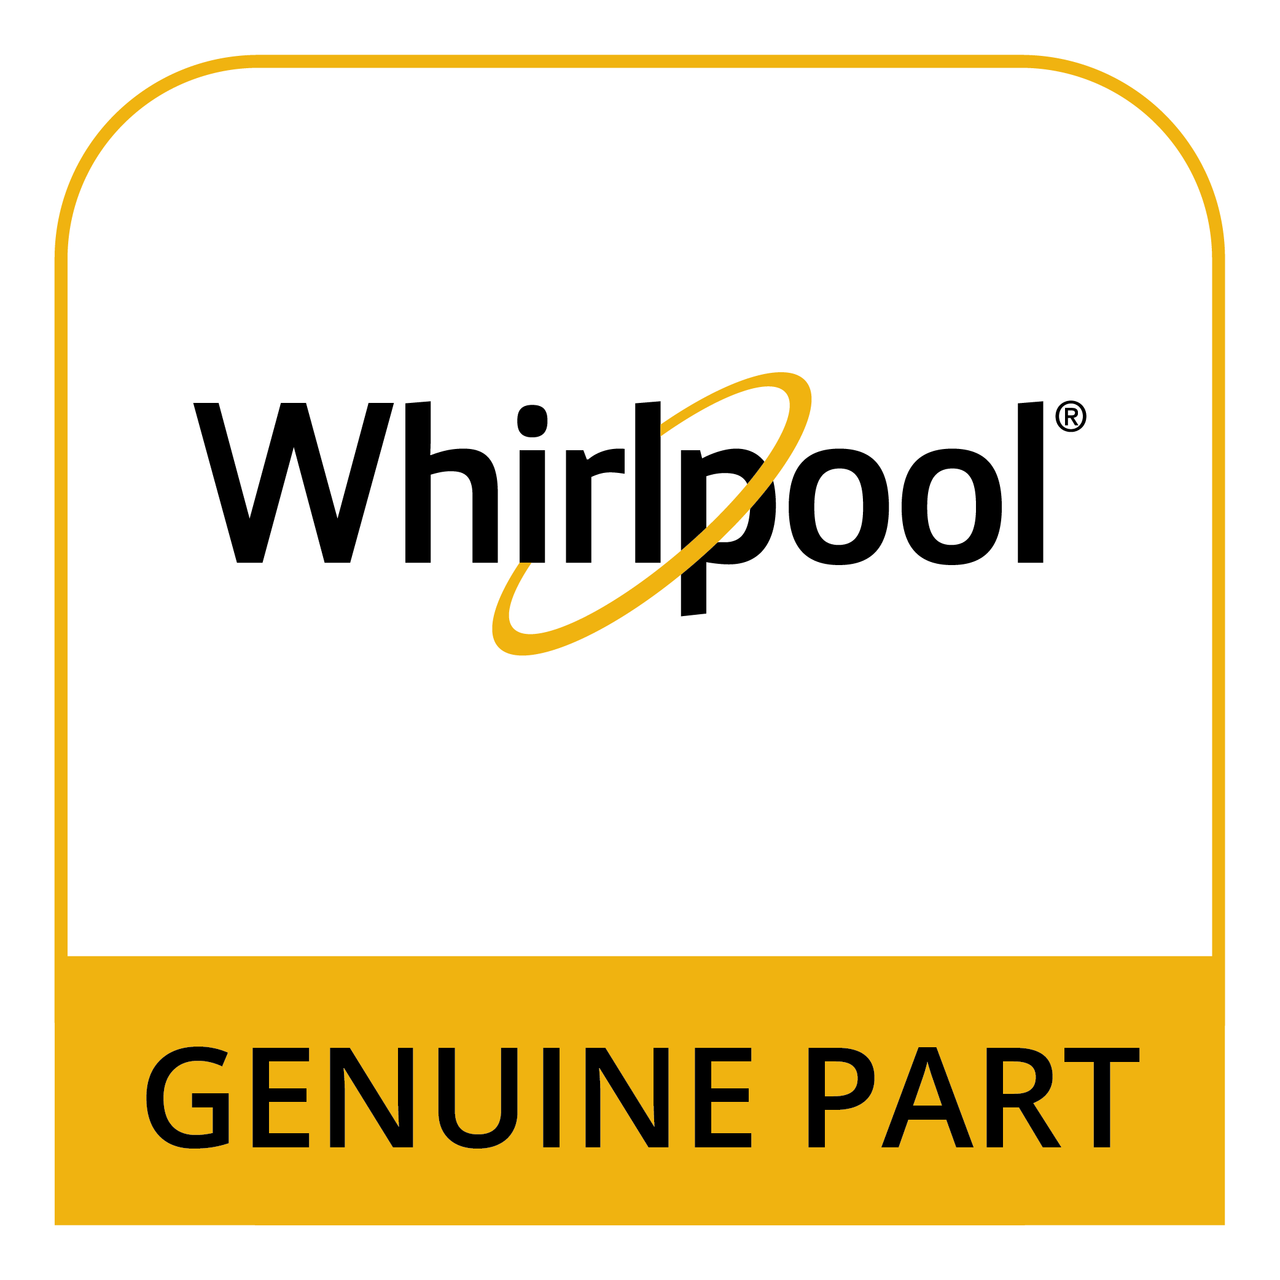 Whirlpool WP3398095 - Dryer Push-to-Start Switch - Genuine Part